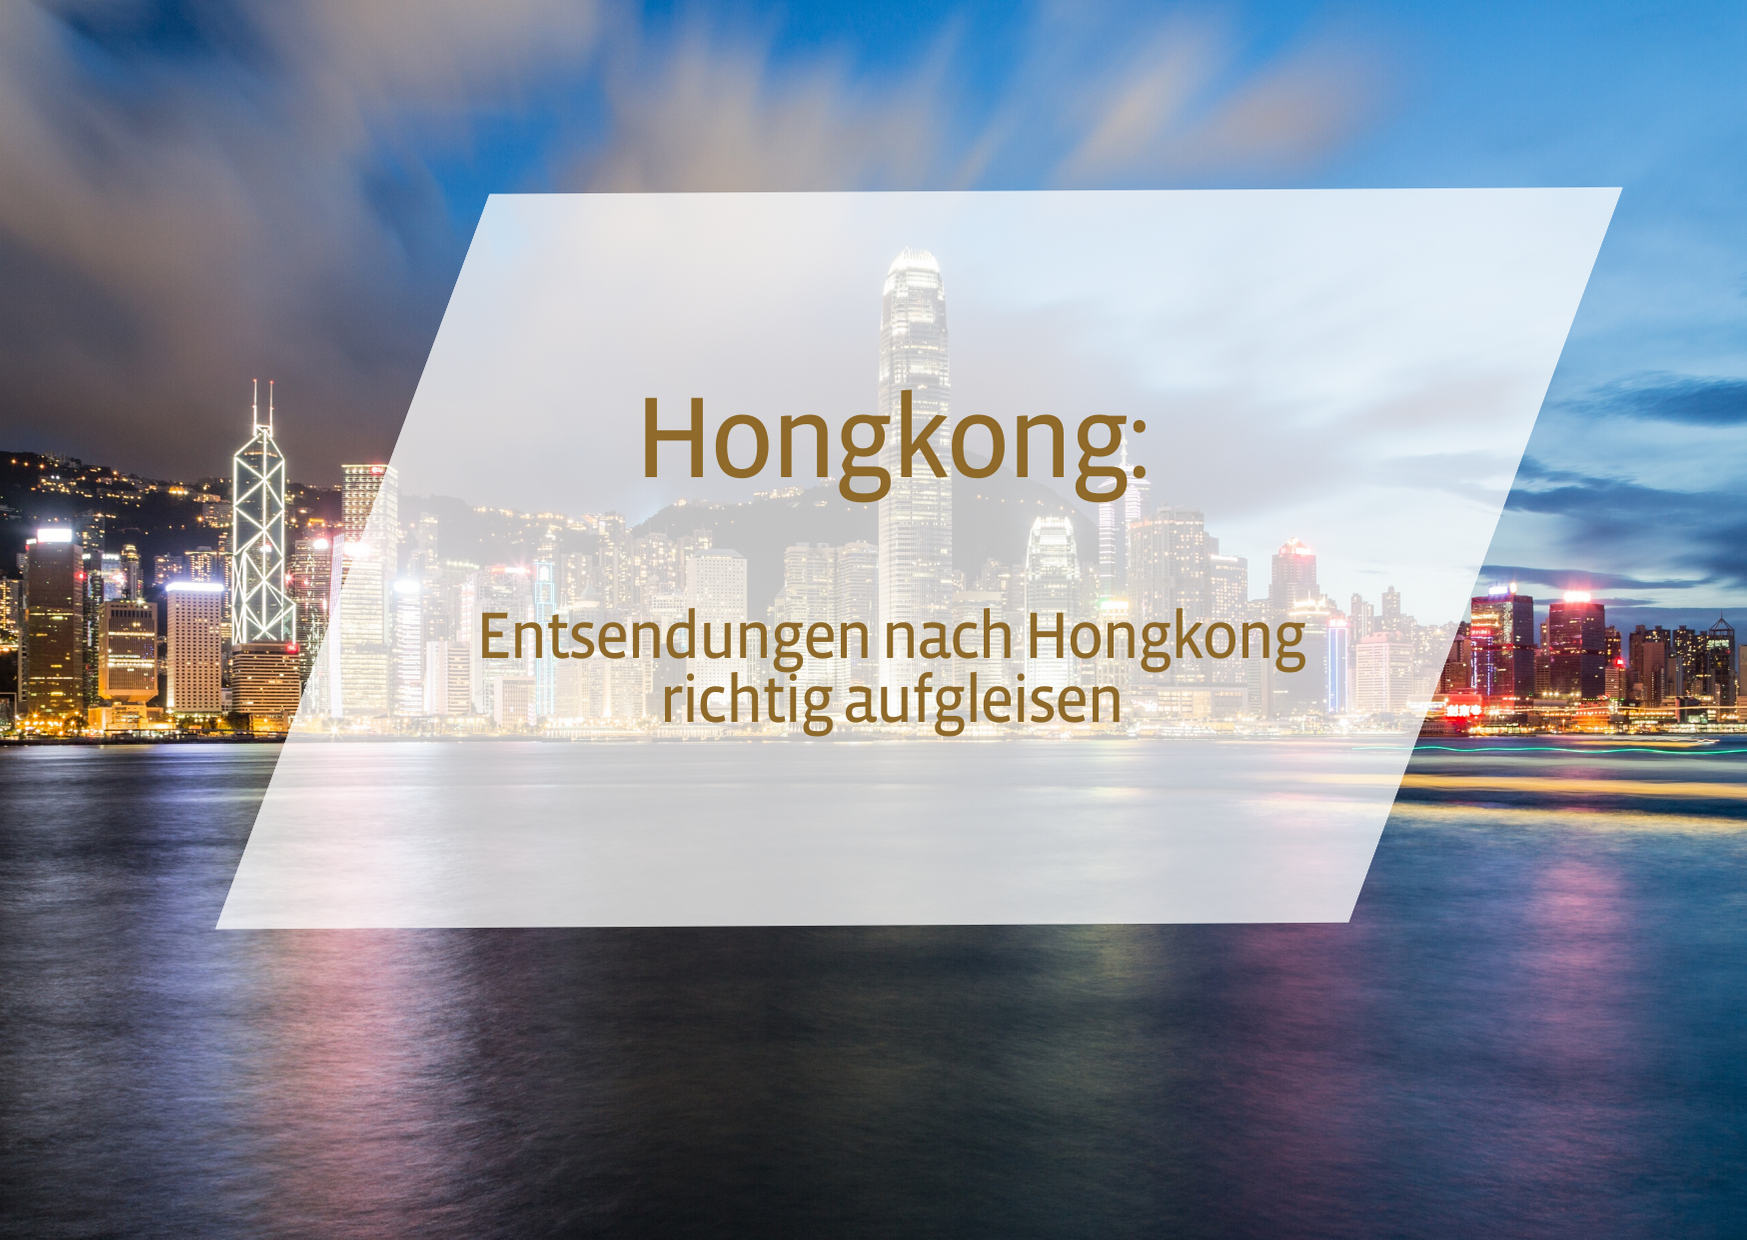 📹 Hong Kong: Entsendungen nach Hong Kong richtig aufgleisen